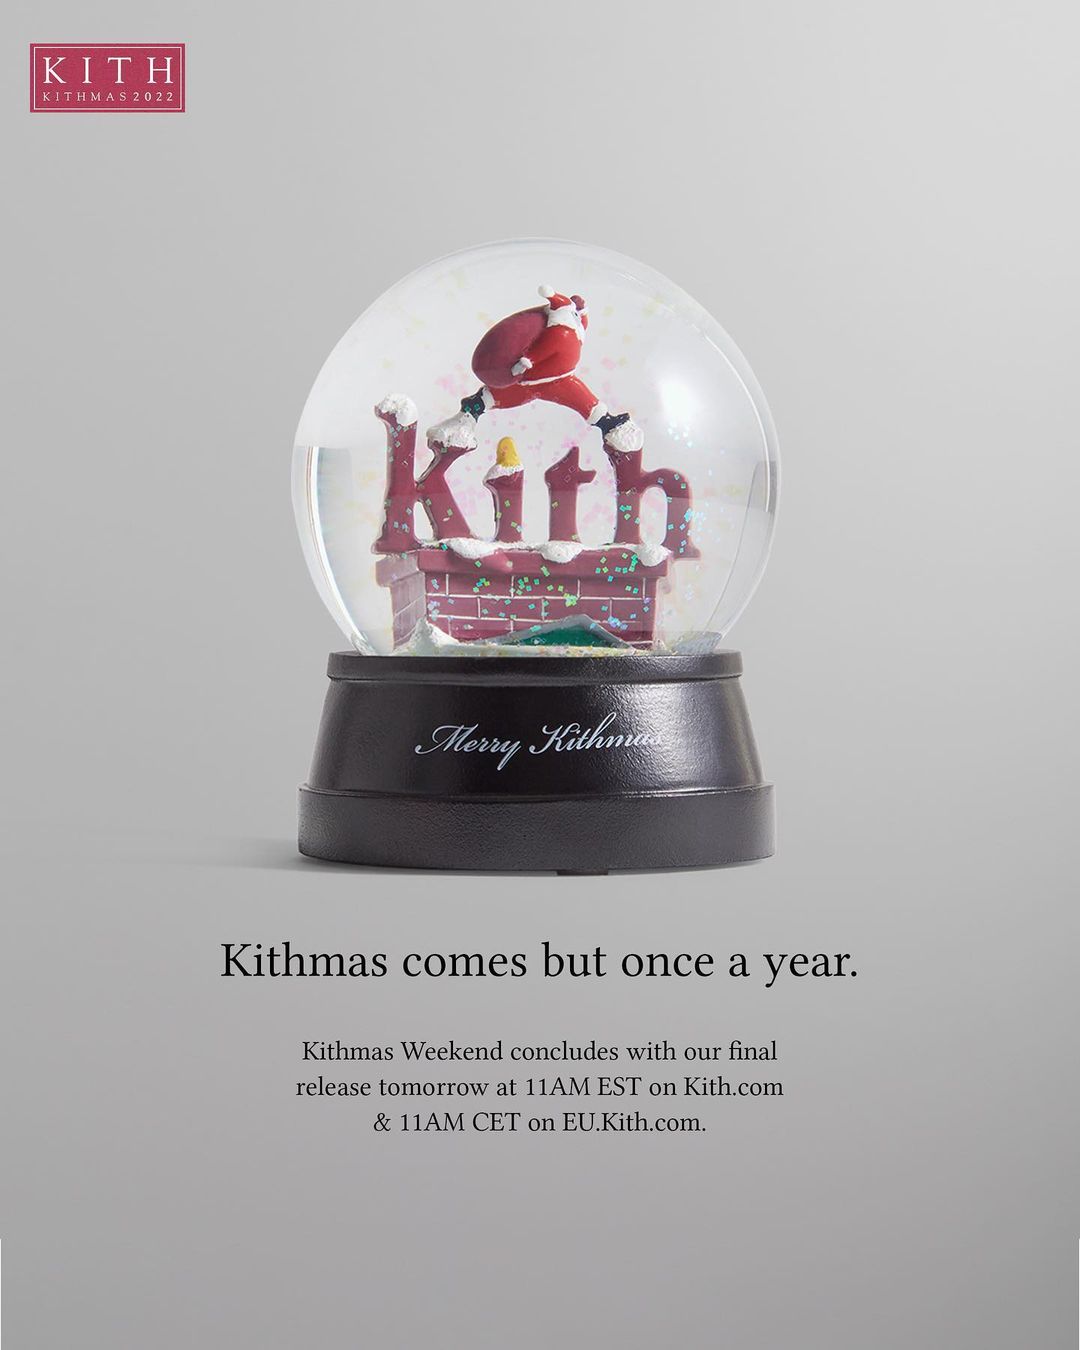 KITH クリスマス「Kithmas 2022」が12/9 発売 (キス)